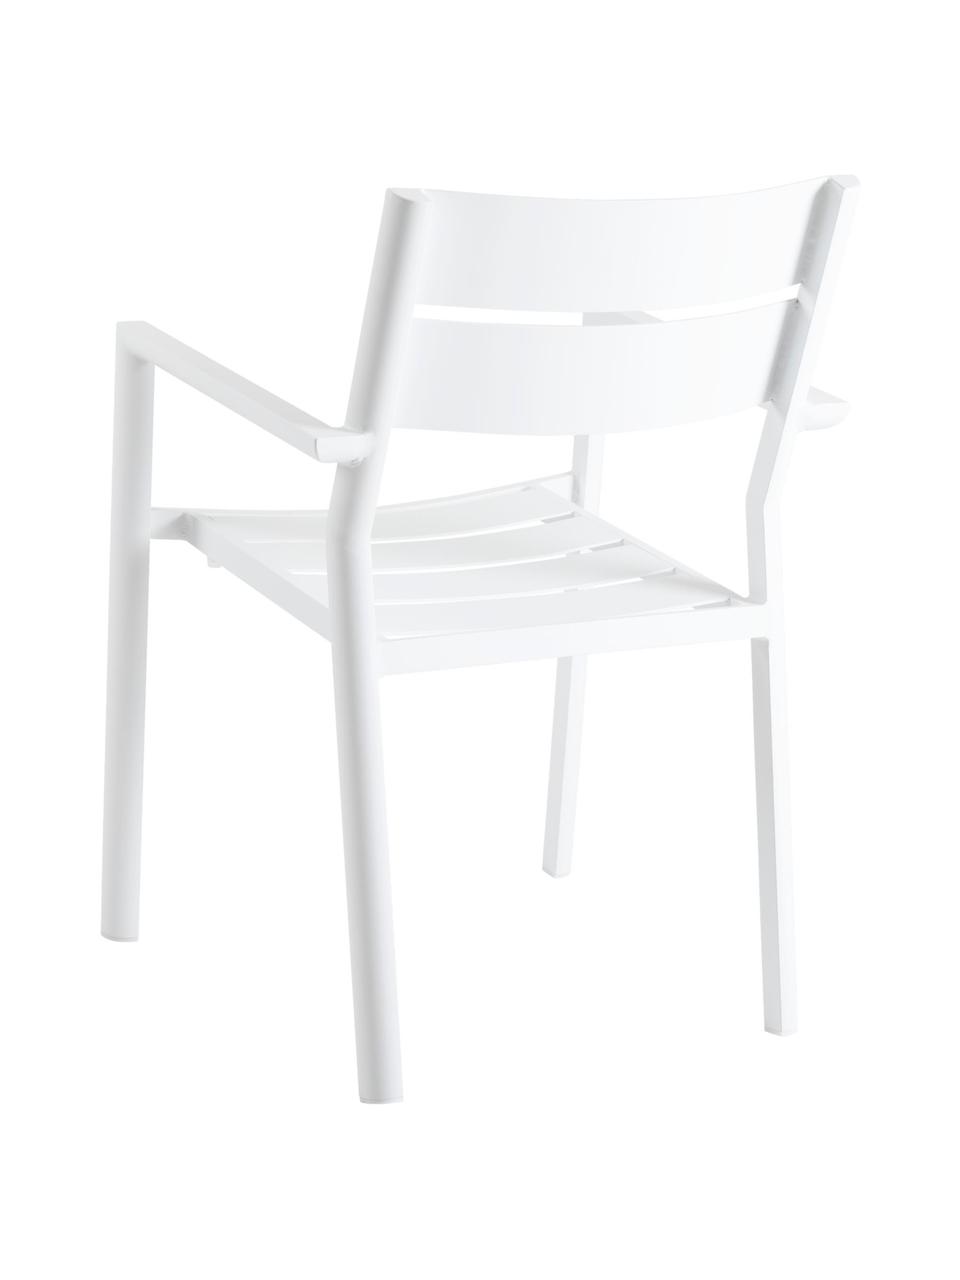 Chaise de jardin empilable Adele, Aluminium, revêtement par poudre, Blanc, larg. 55 x prof. 55 cm